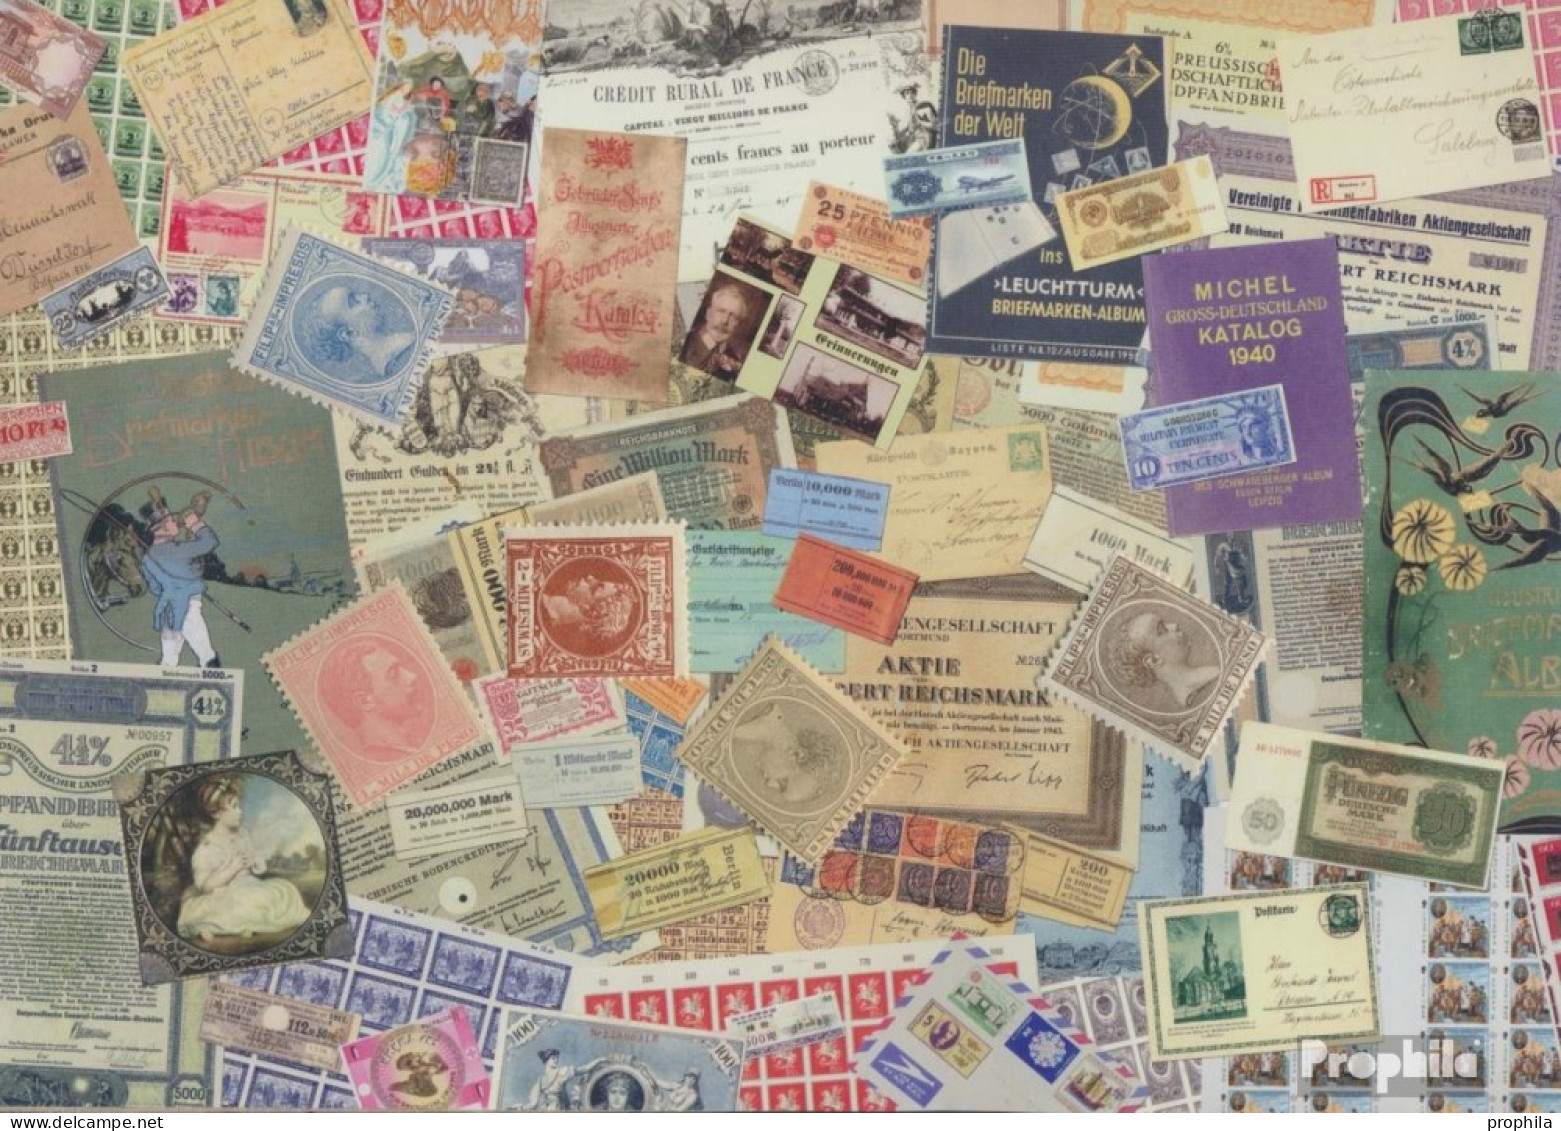 Philippinen Briefmarken-5 Verschiedene Marken - Philippinen